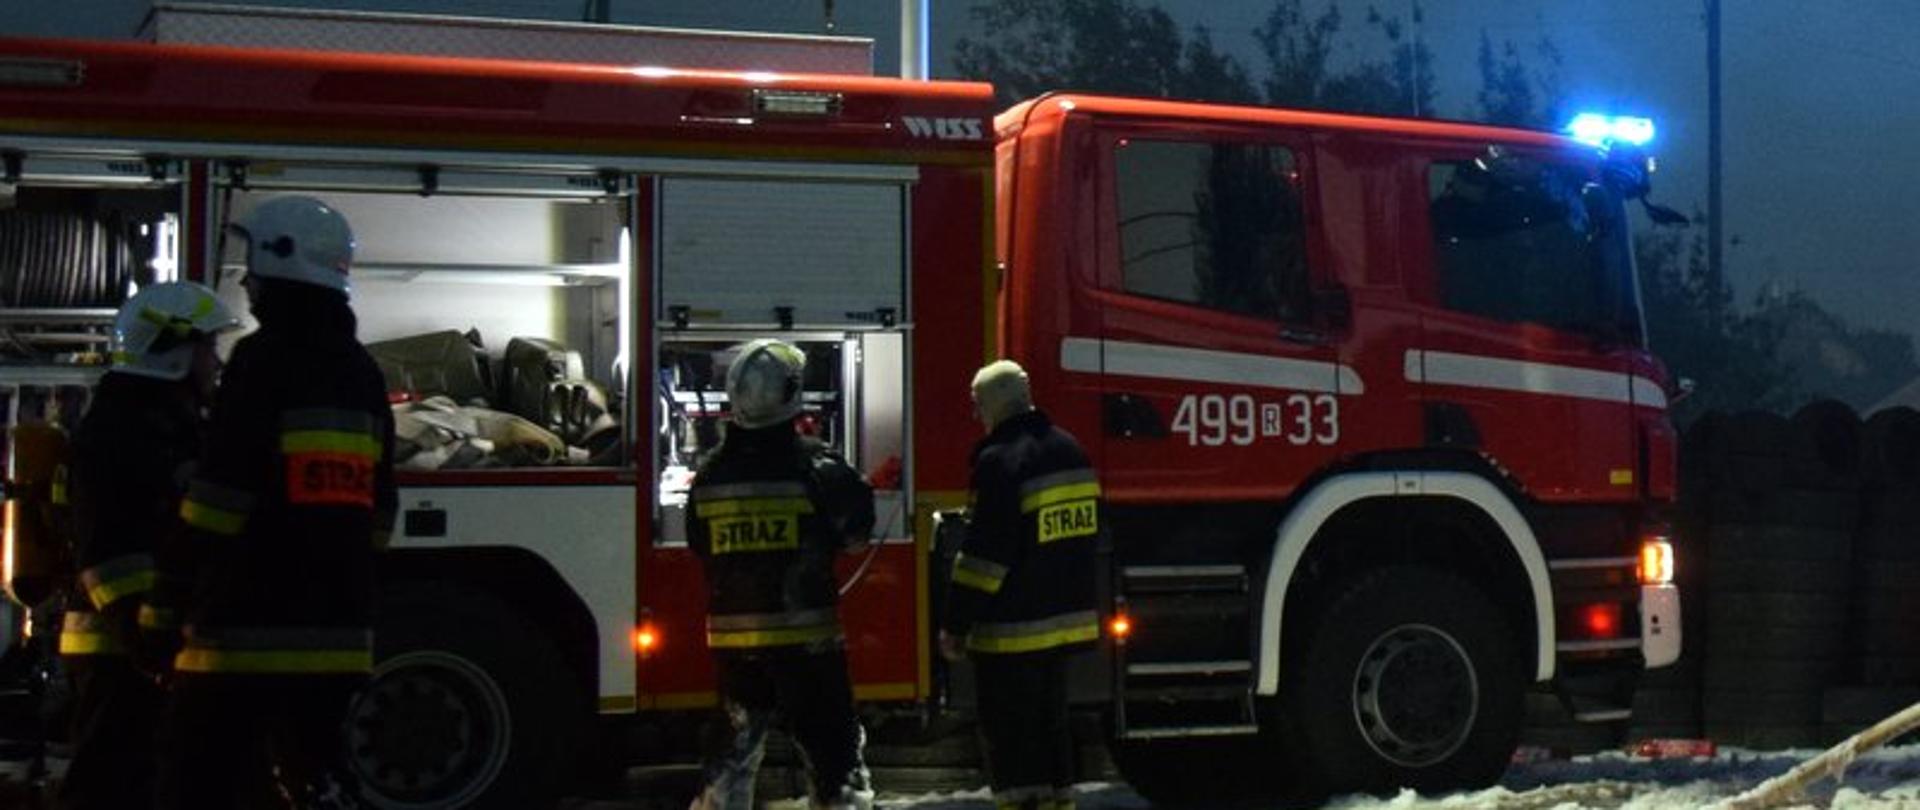 Zdjęcie zrobione w nocy. Na zdjęciu widać samochód gaśniczy, który ma włączone sygnały błyskowe. Przed samochodem stoją strażacy w ubraniach specjalnych (nomexach), przygotowujący się do gaszenia pożaru.